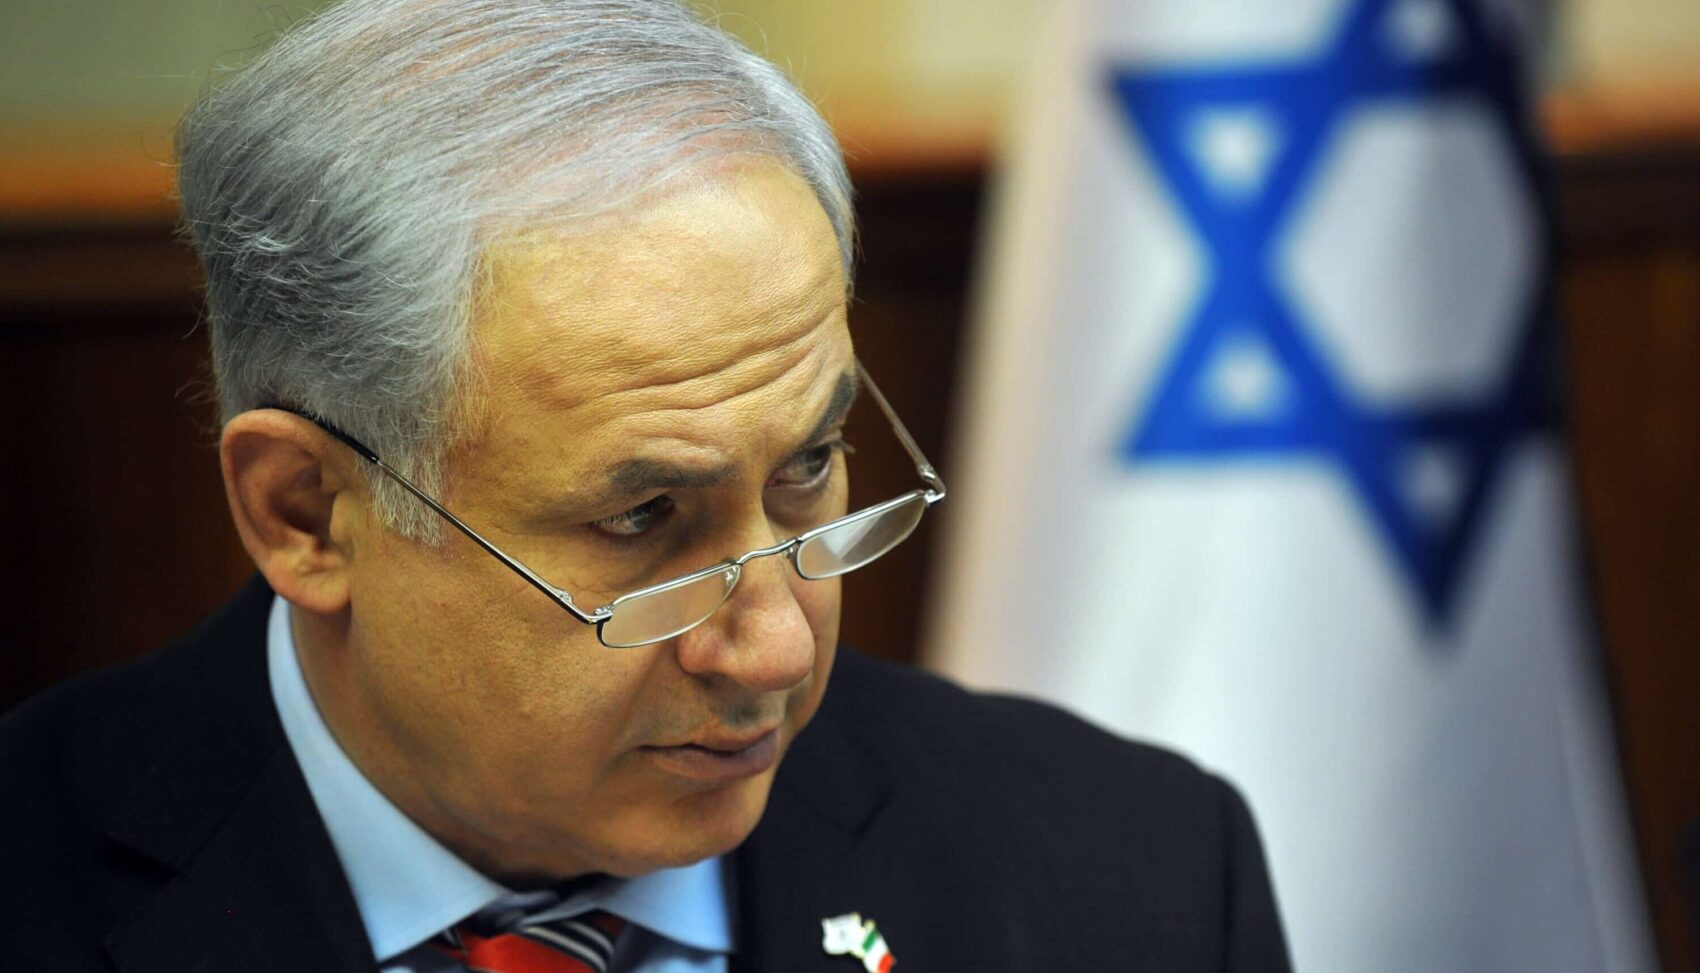 “La colpa è di Netanyahu, Israele ha permesso ad Hamas di armarsi”: l’attacco dell’ex capo dei servizi segreti